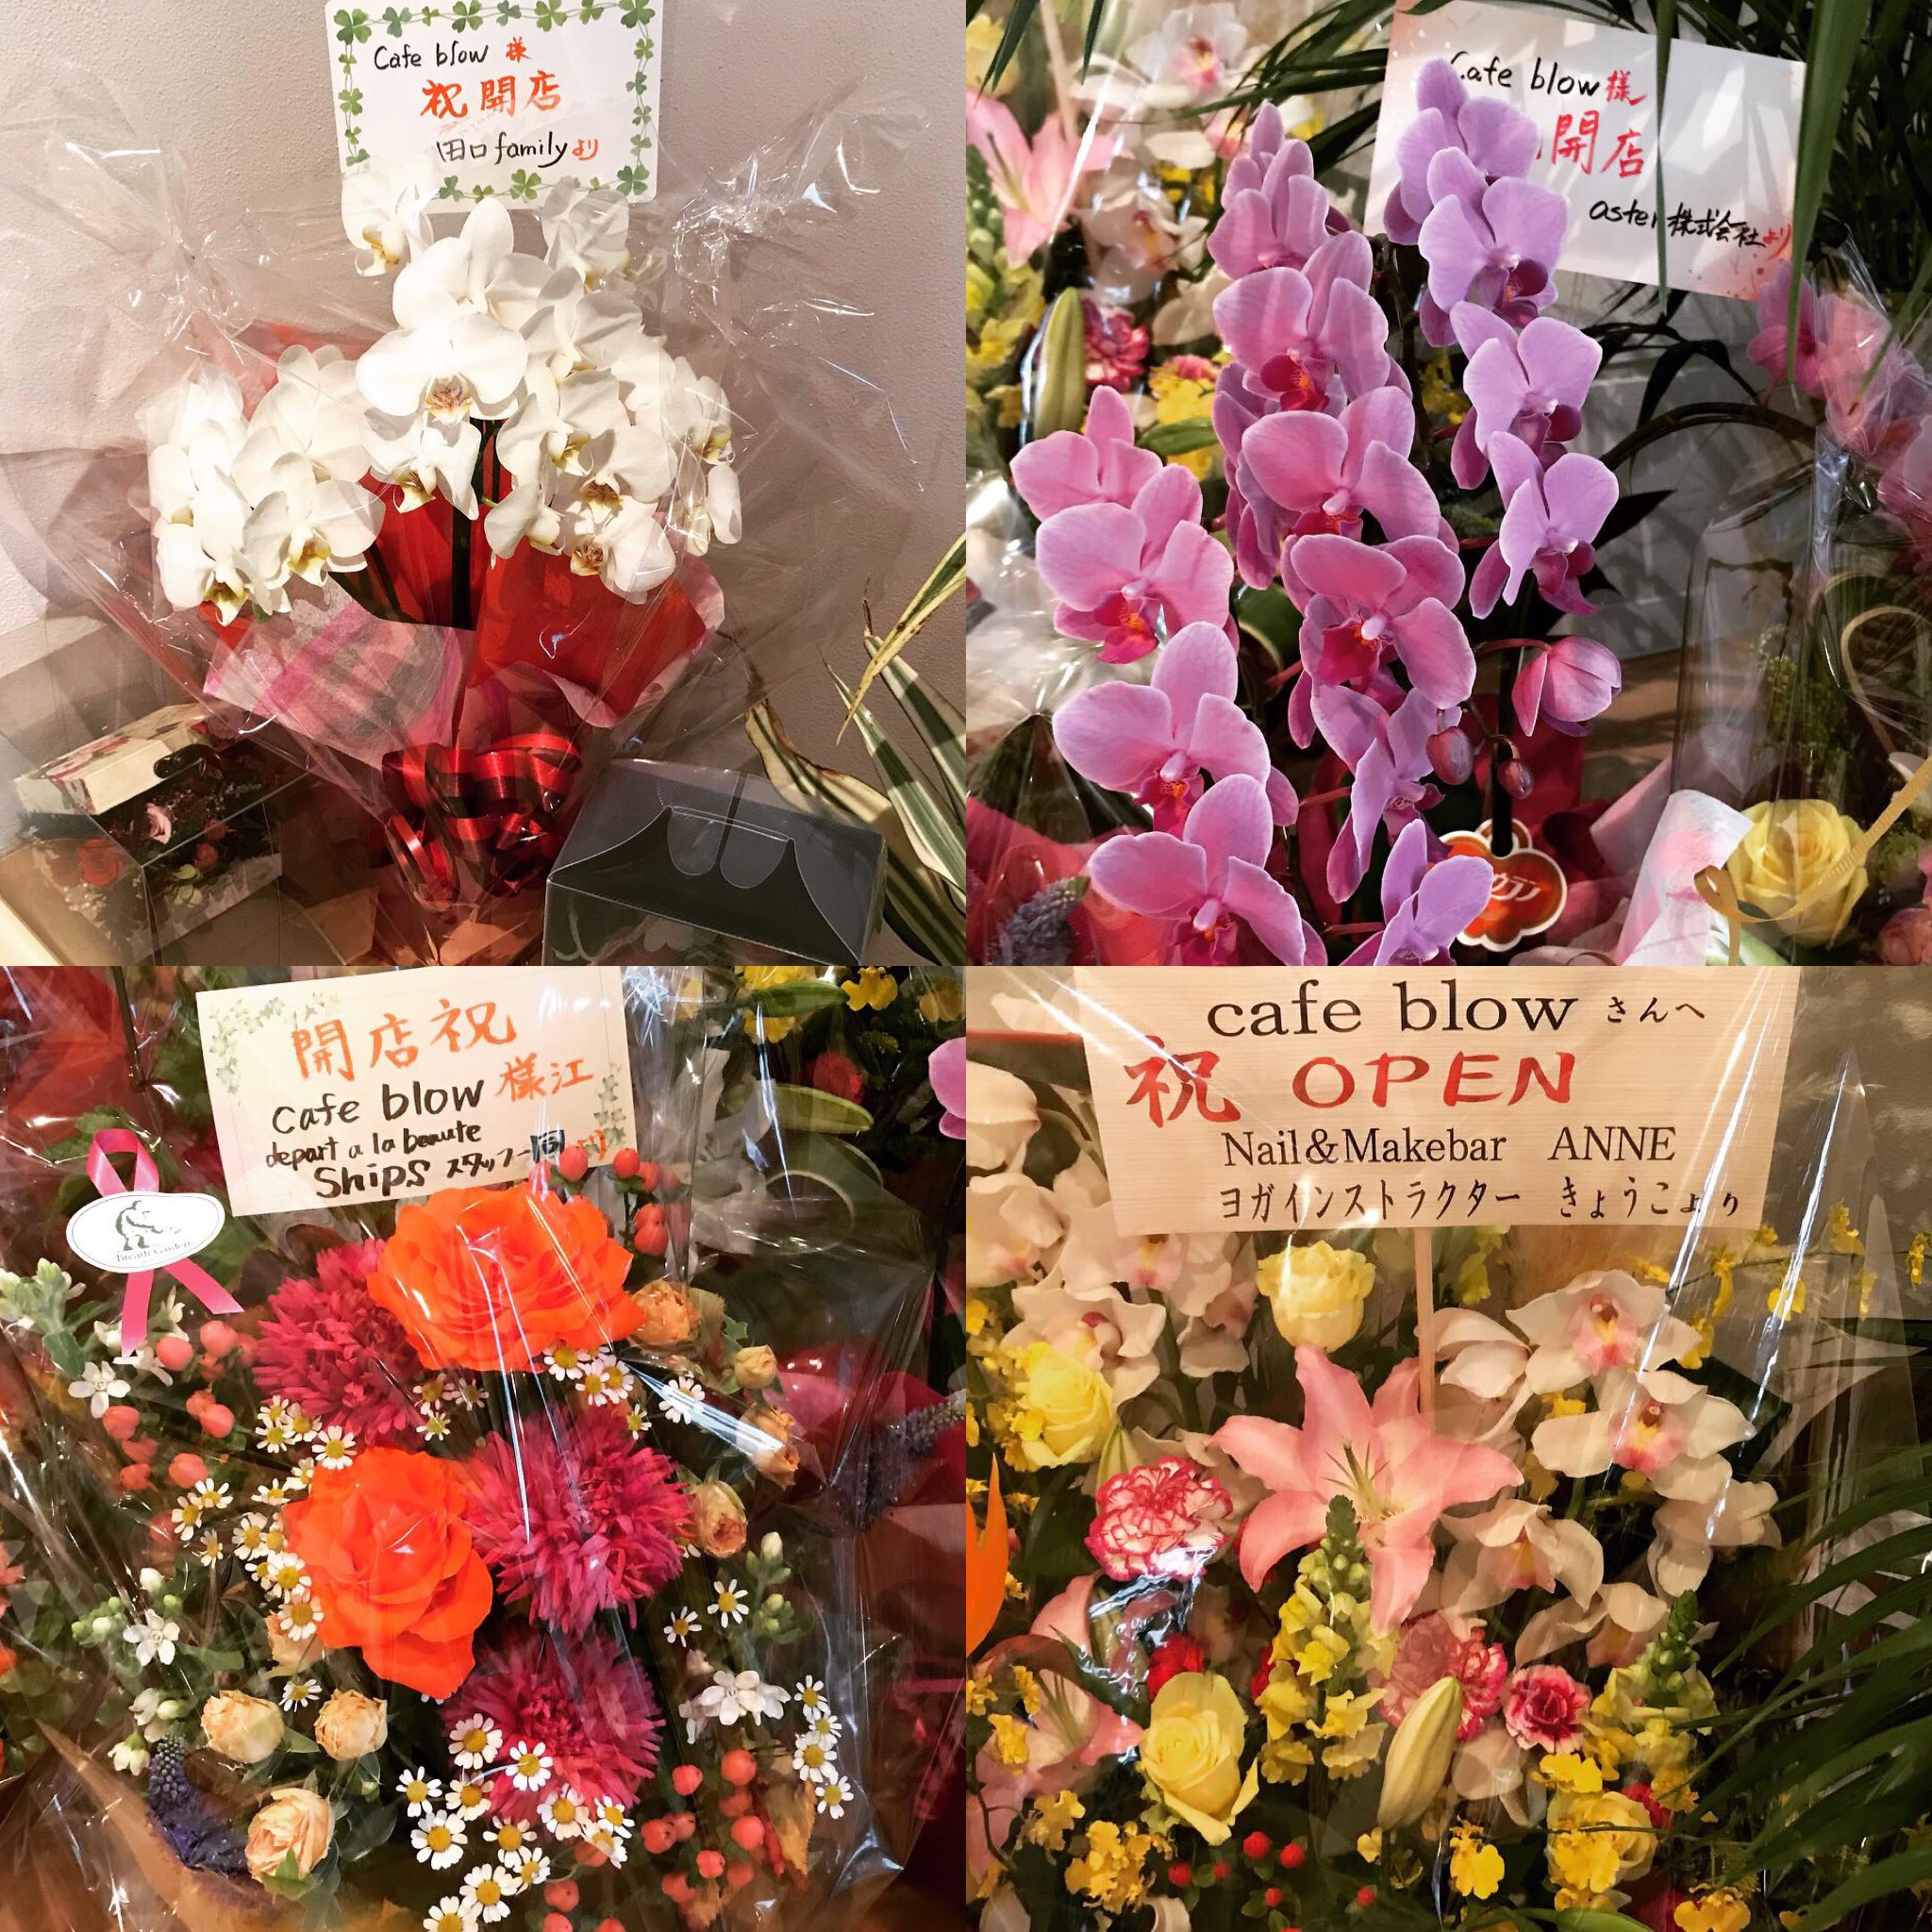 たくさんのお祝いのお言葉とお花をありがとうございました 泉佐野市と和泉市のパンケーキカフェ Cafeblow